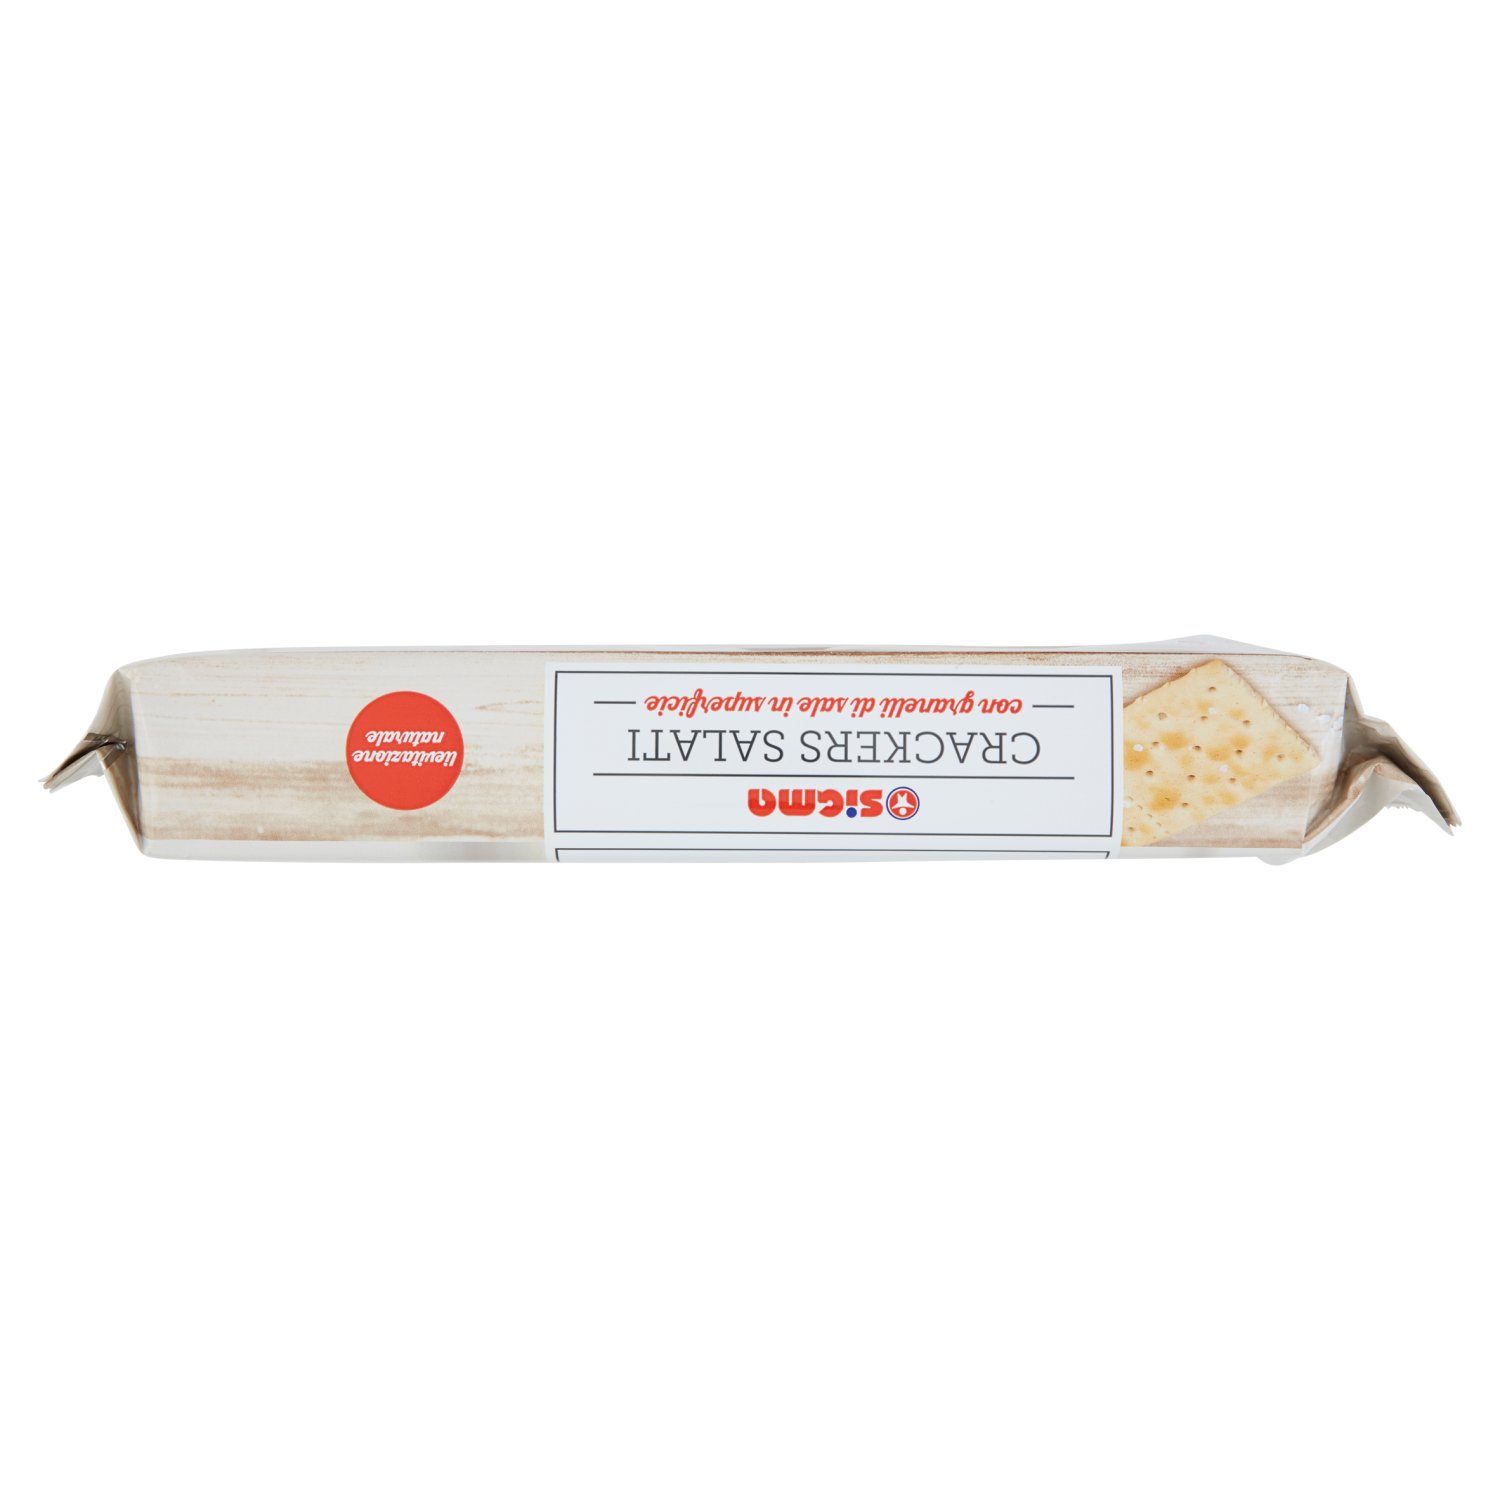 Sigma Crackers Salati senza granelli di sale in superficie 20 x 25 g -  SuperSIGMA